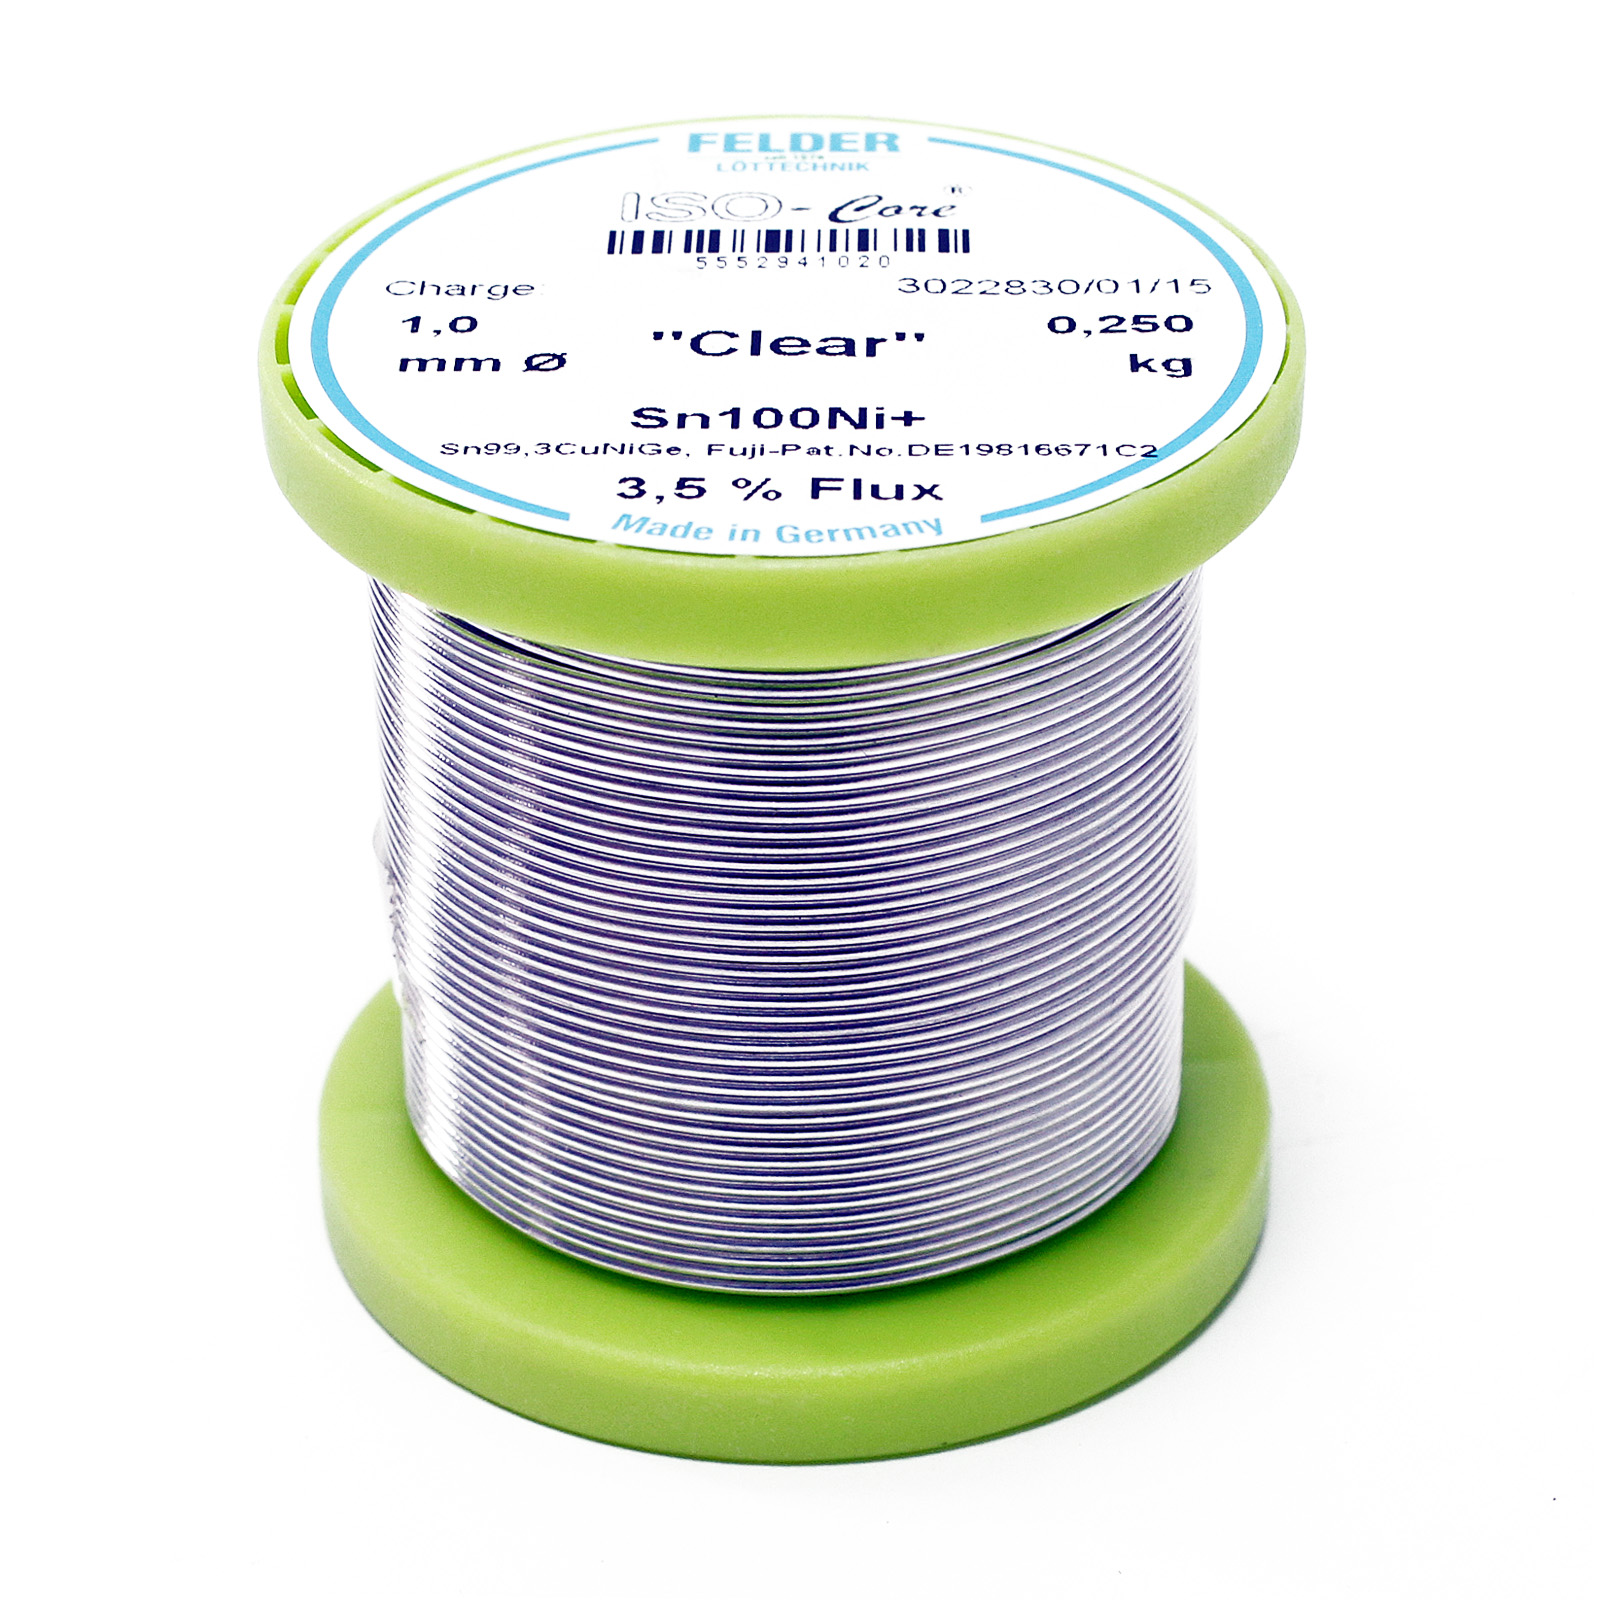 Felder Solder Wire ISO-Core "Clear" Sn100Ni+ Sn99,3CuNiGe 1.0mm 0.25kg